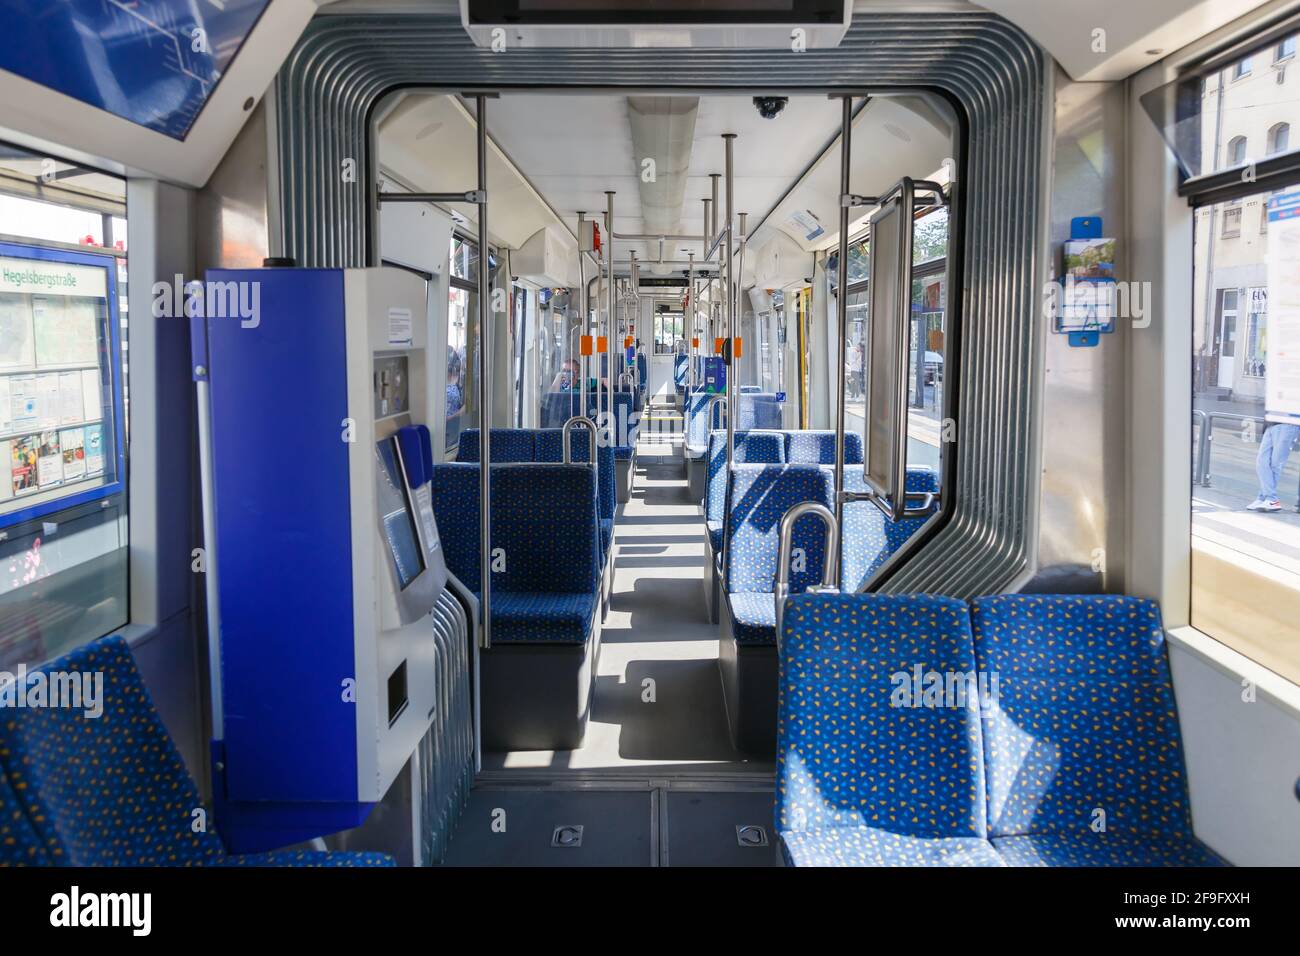 Kassel, Germany - August 8, 2020: Tram interior Bombardier Flexity Classic public transport in Kassel, Germany. Stock Photo